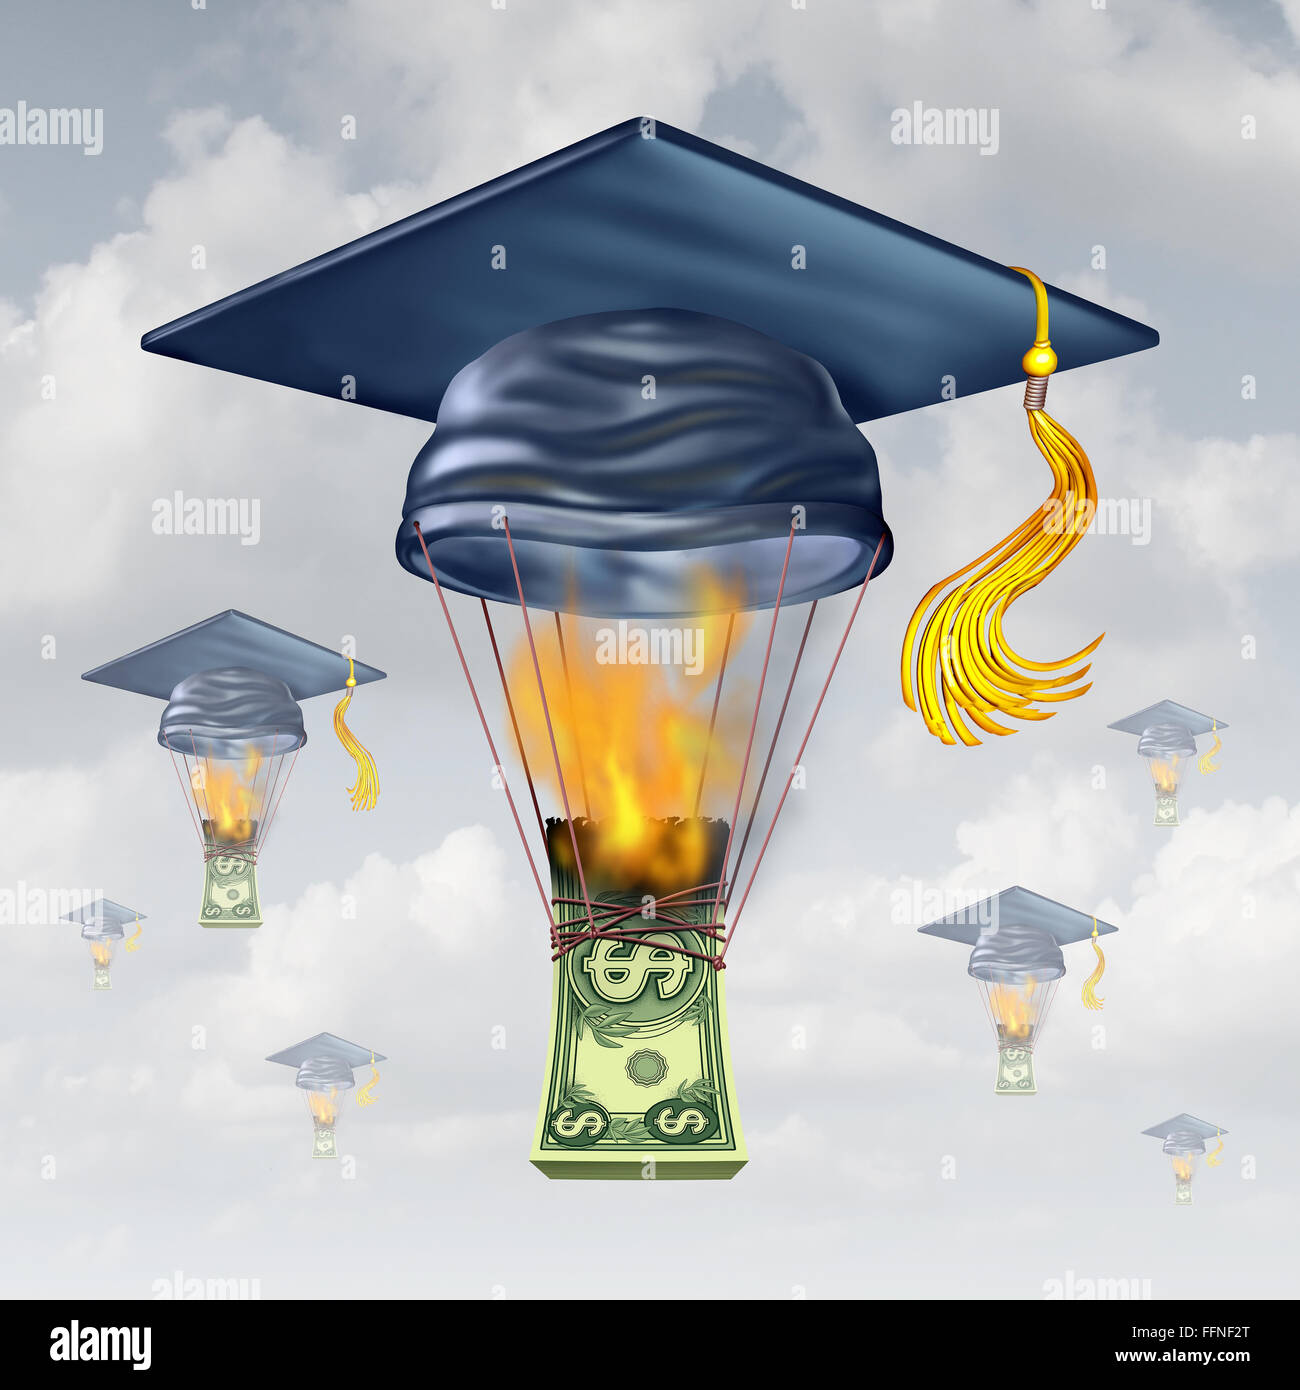 Coût de l'éducation et l'école secondaire comme les frais d'une graduation hat sous forme d'un ballon à air chaud d'être élevé par les flammes de l'incendie de l'argent comme une métaphore de l'argent financier de stress. Banque D'Images